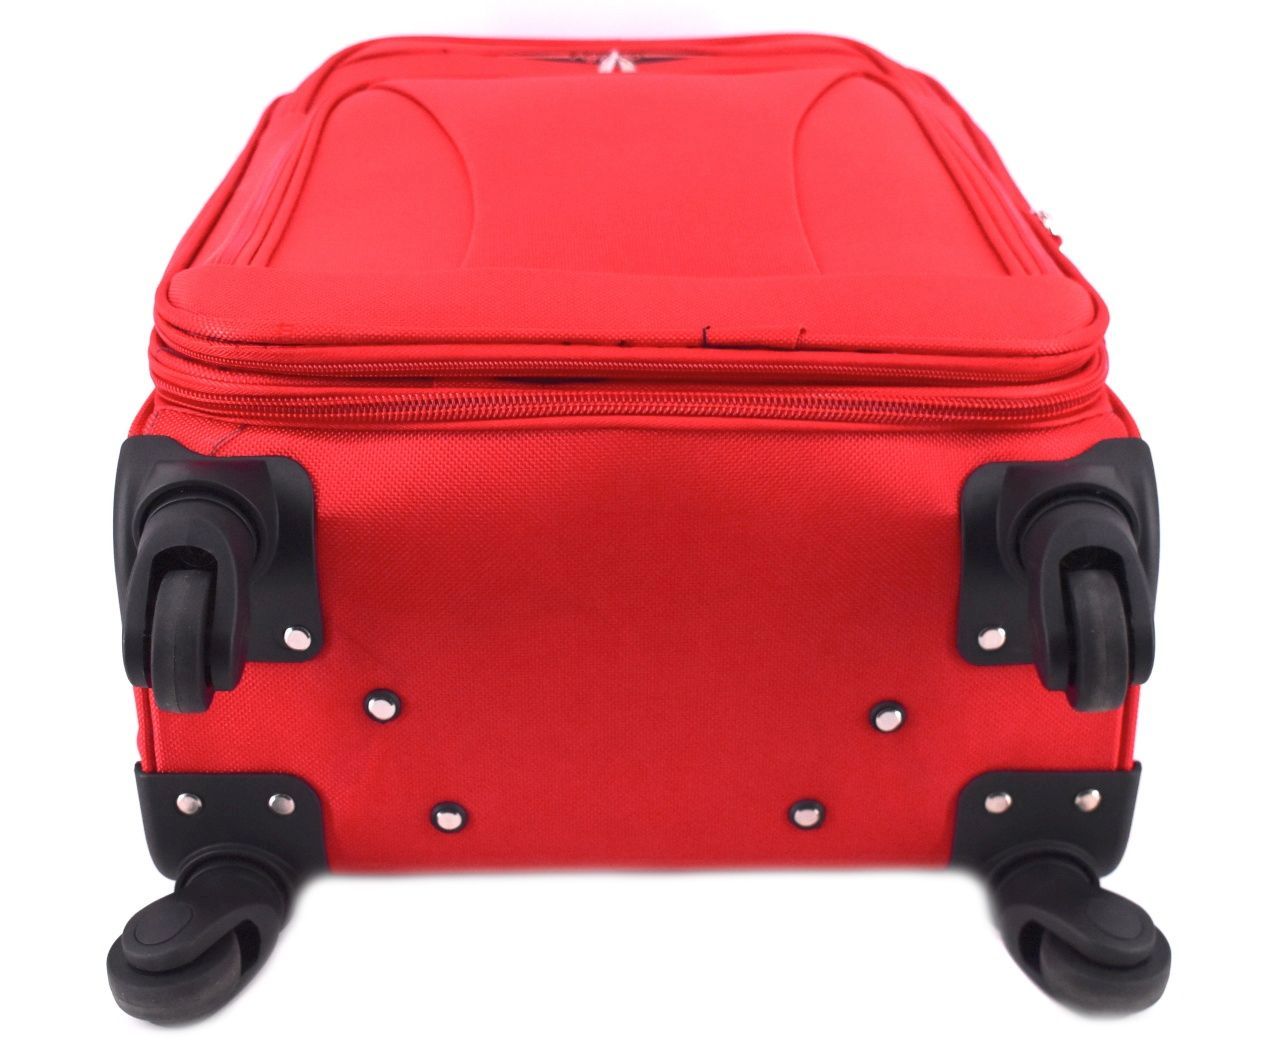 Cestovní textilní kufr na čtyřech kolečkách Agrado (S) 45l - tmavě modrá 8021 (S)